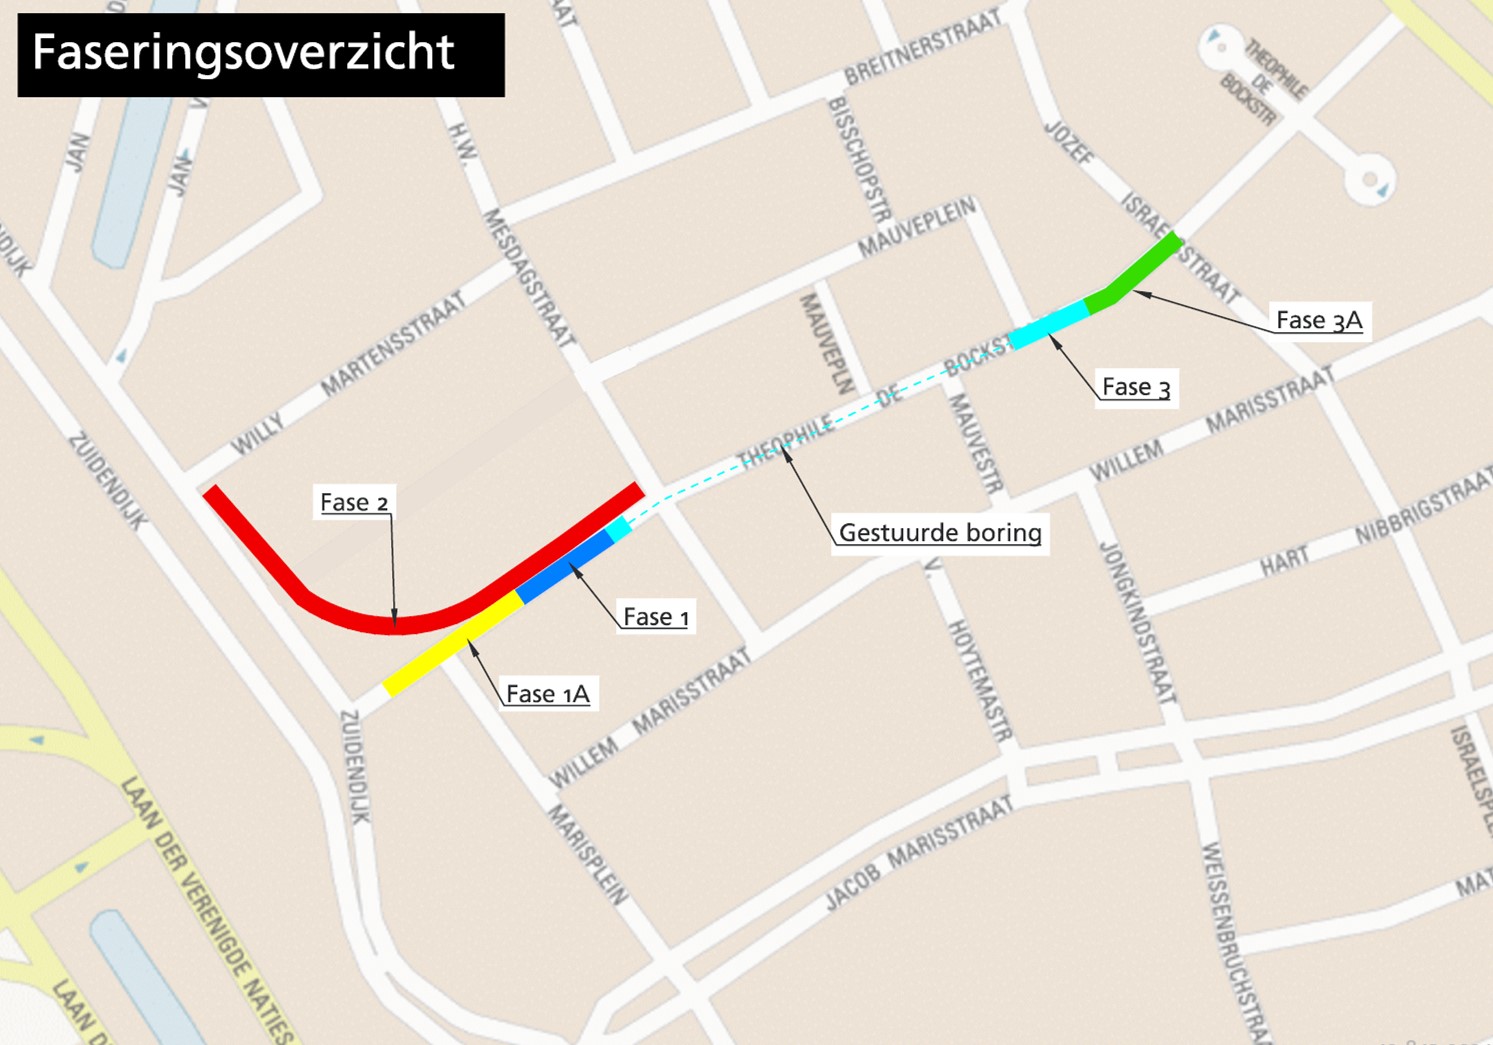 Op deze afbeelding is een plattegrond te zien van de omgeving van de Theophile de Bockstraat waarop het werkgebied is aangegeven waar gewerkt wordt aan het warmtenet Dordrecht.